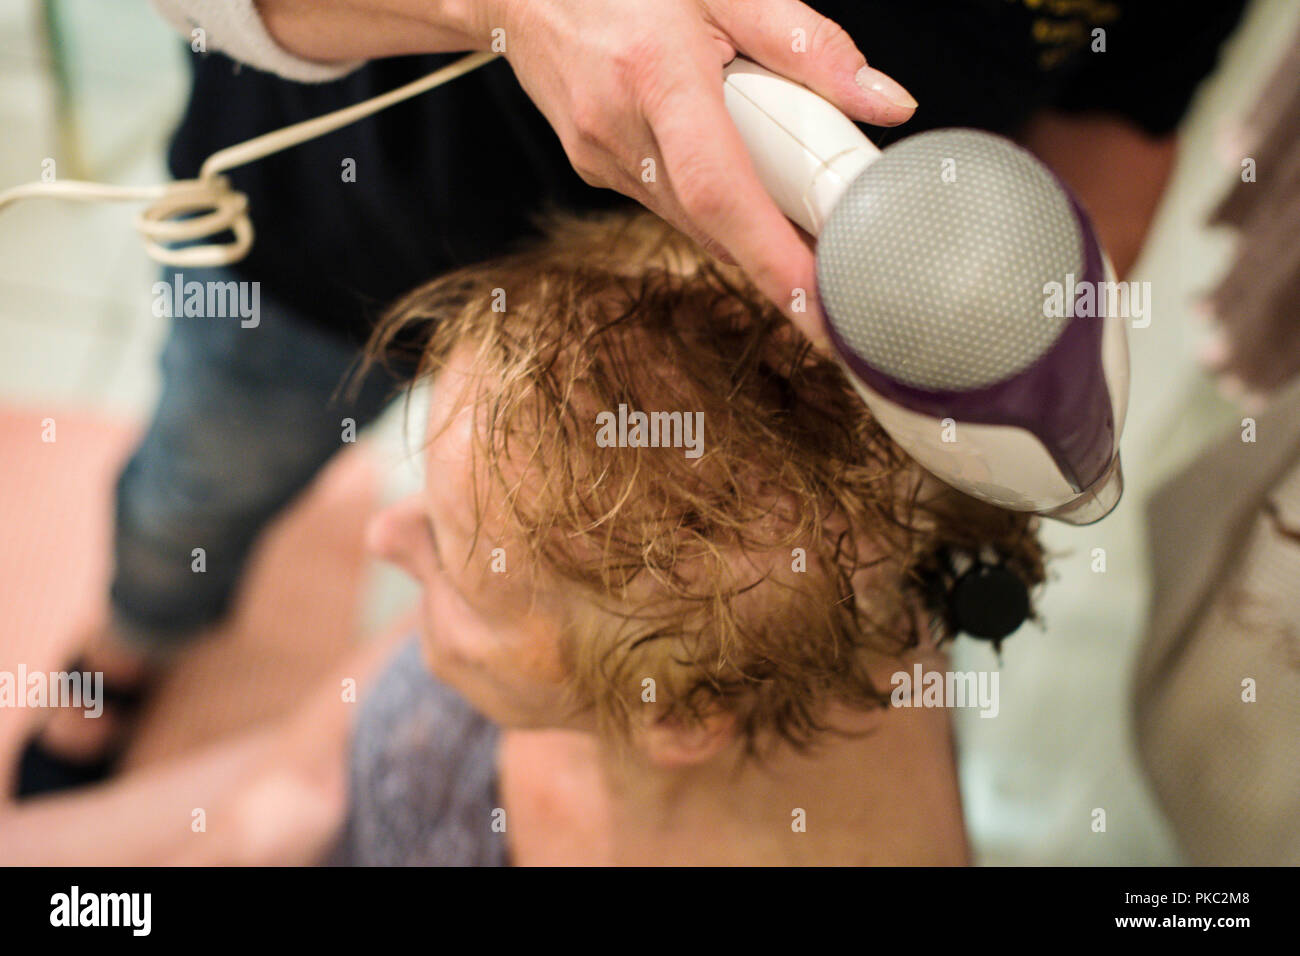 11 settembre 2018, della Renania settentrionale-Vestfalia, Essen: un infermiere ambulatoriale aiuta una donna anziana pettinare e asciugare i capelli. Foto: Jana Bauch/dpa Foto Stock